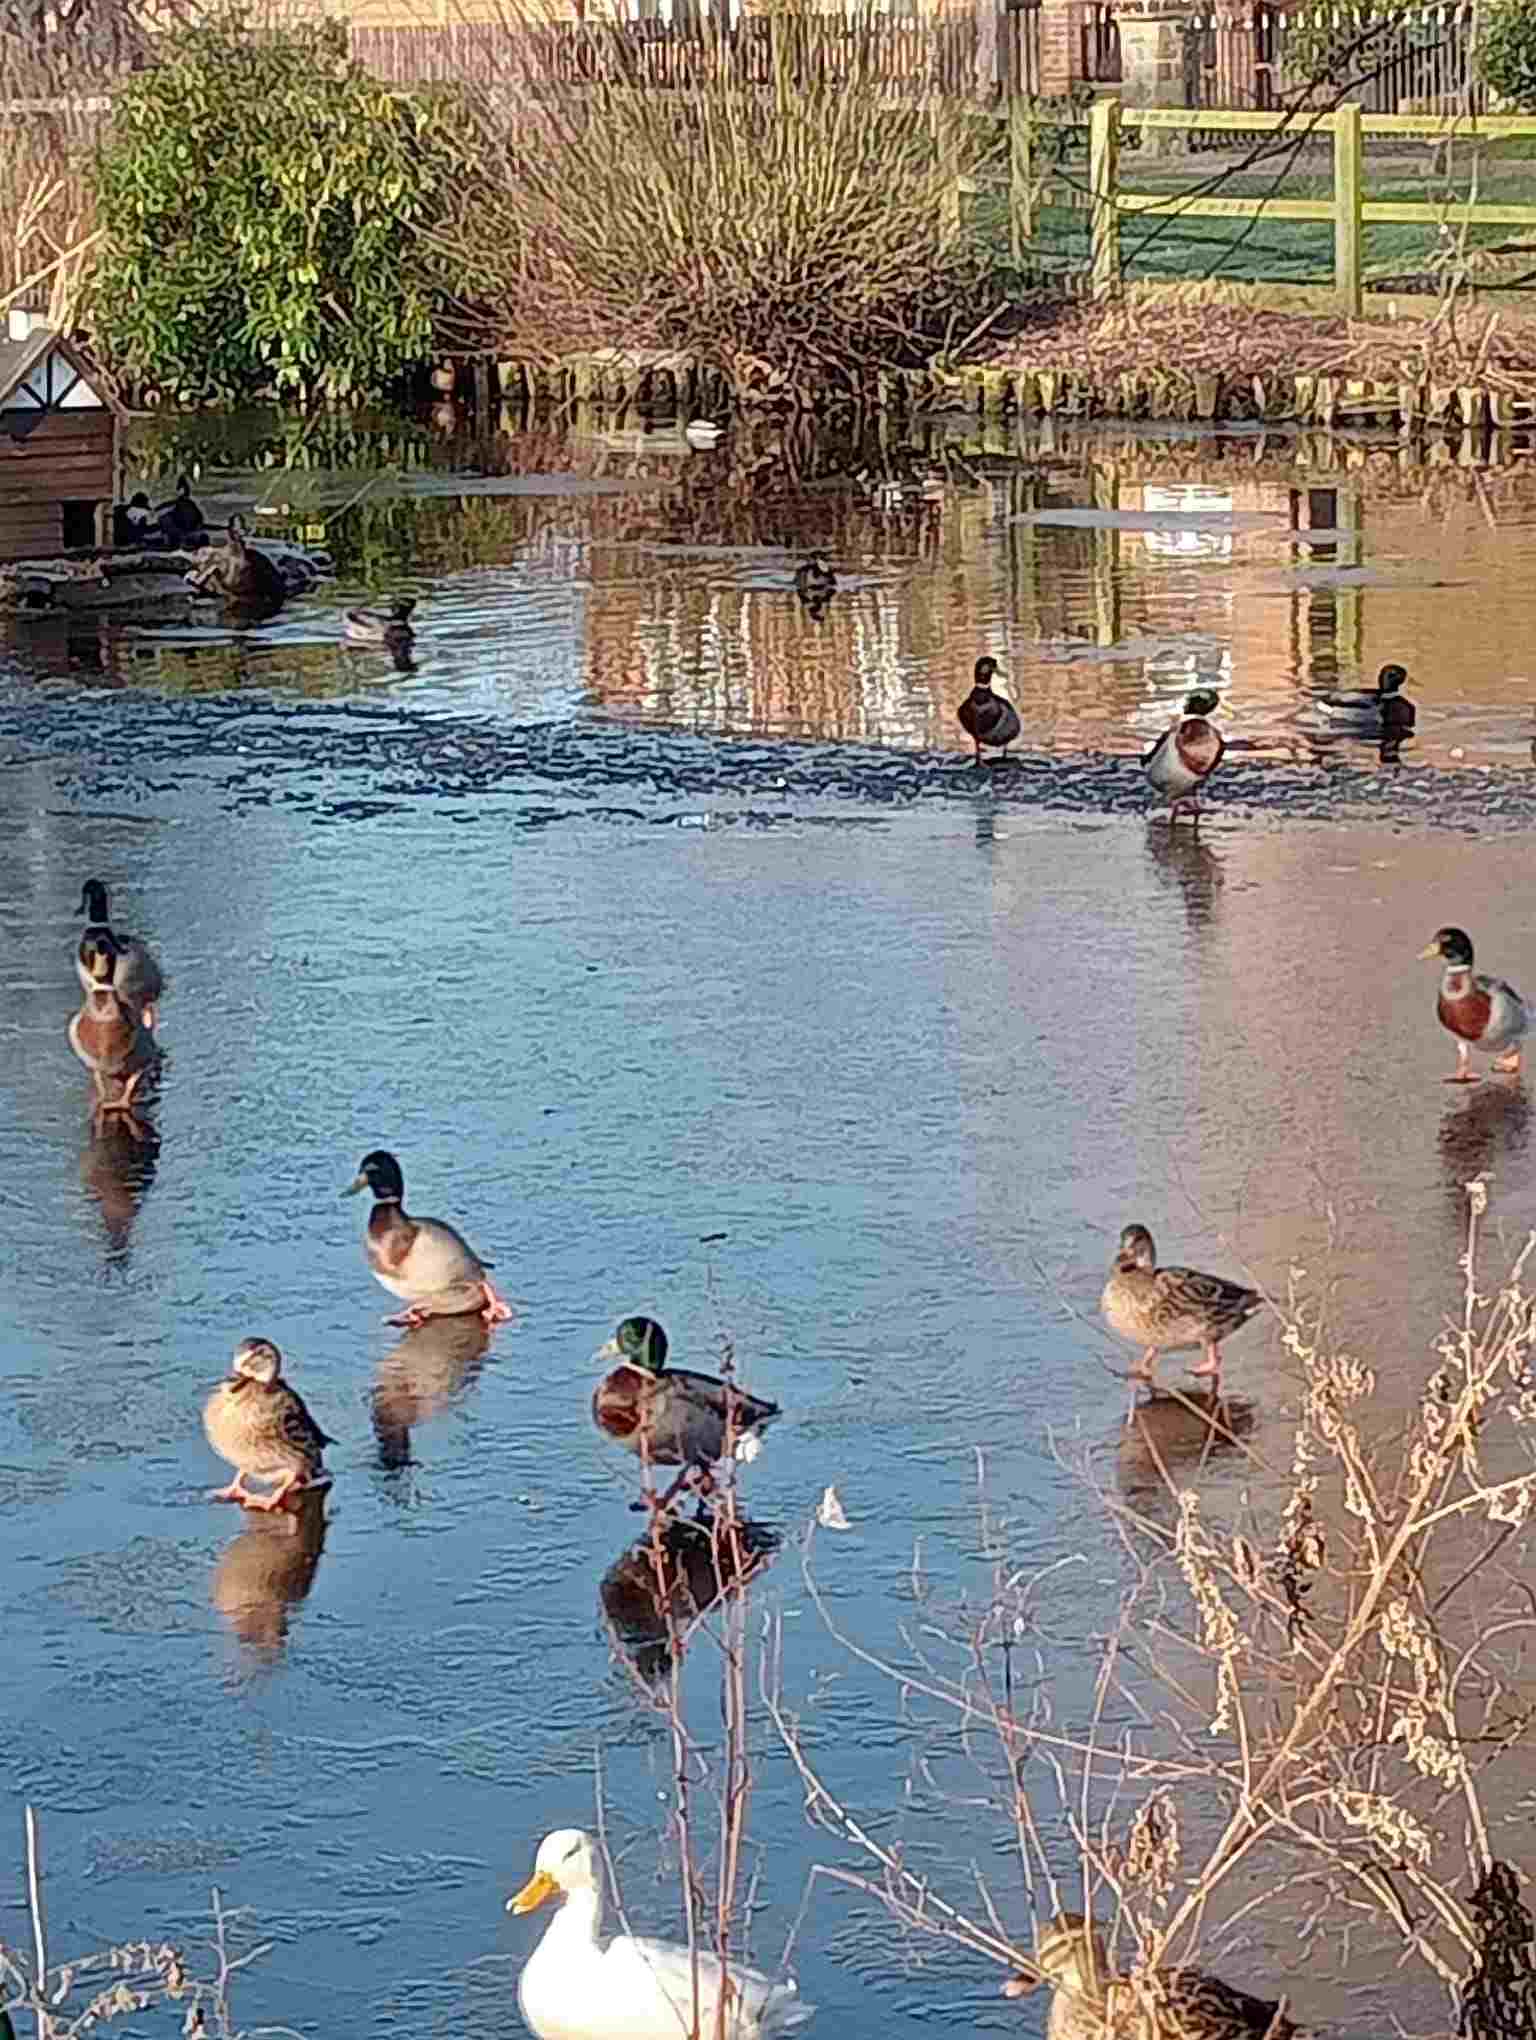 Ducks on frozen pond 2